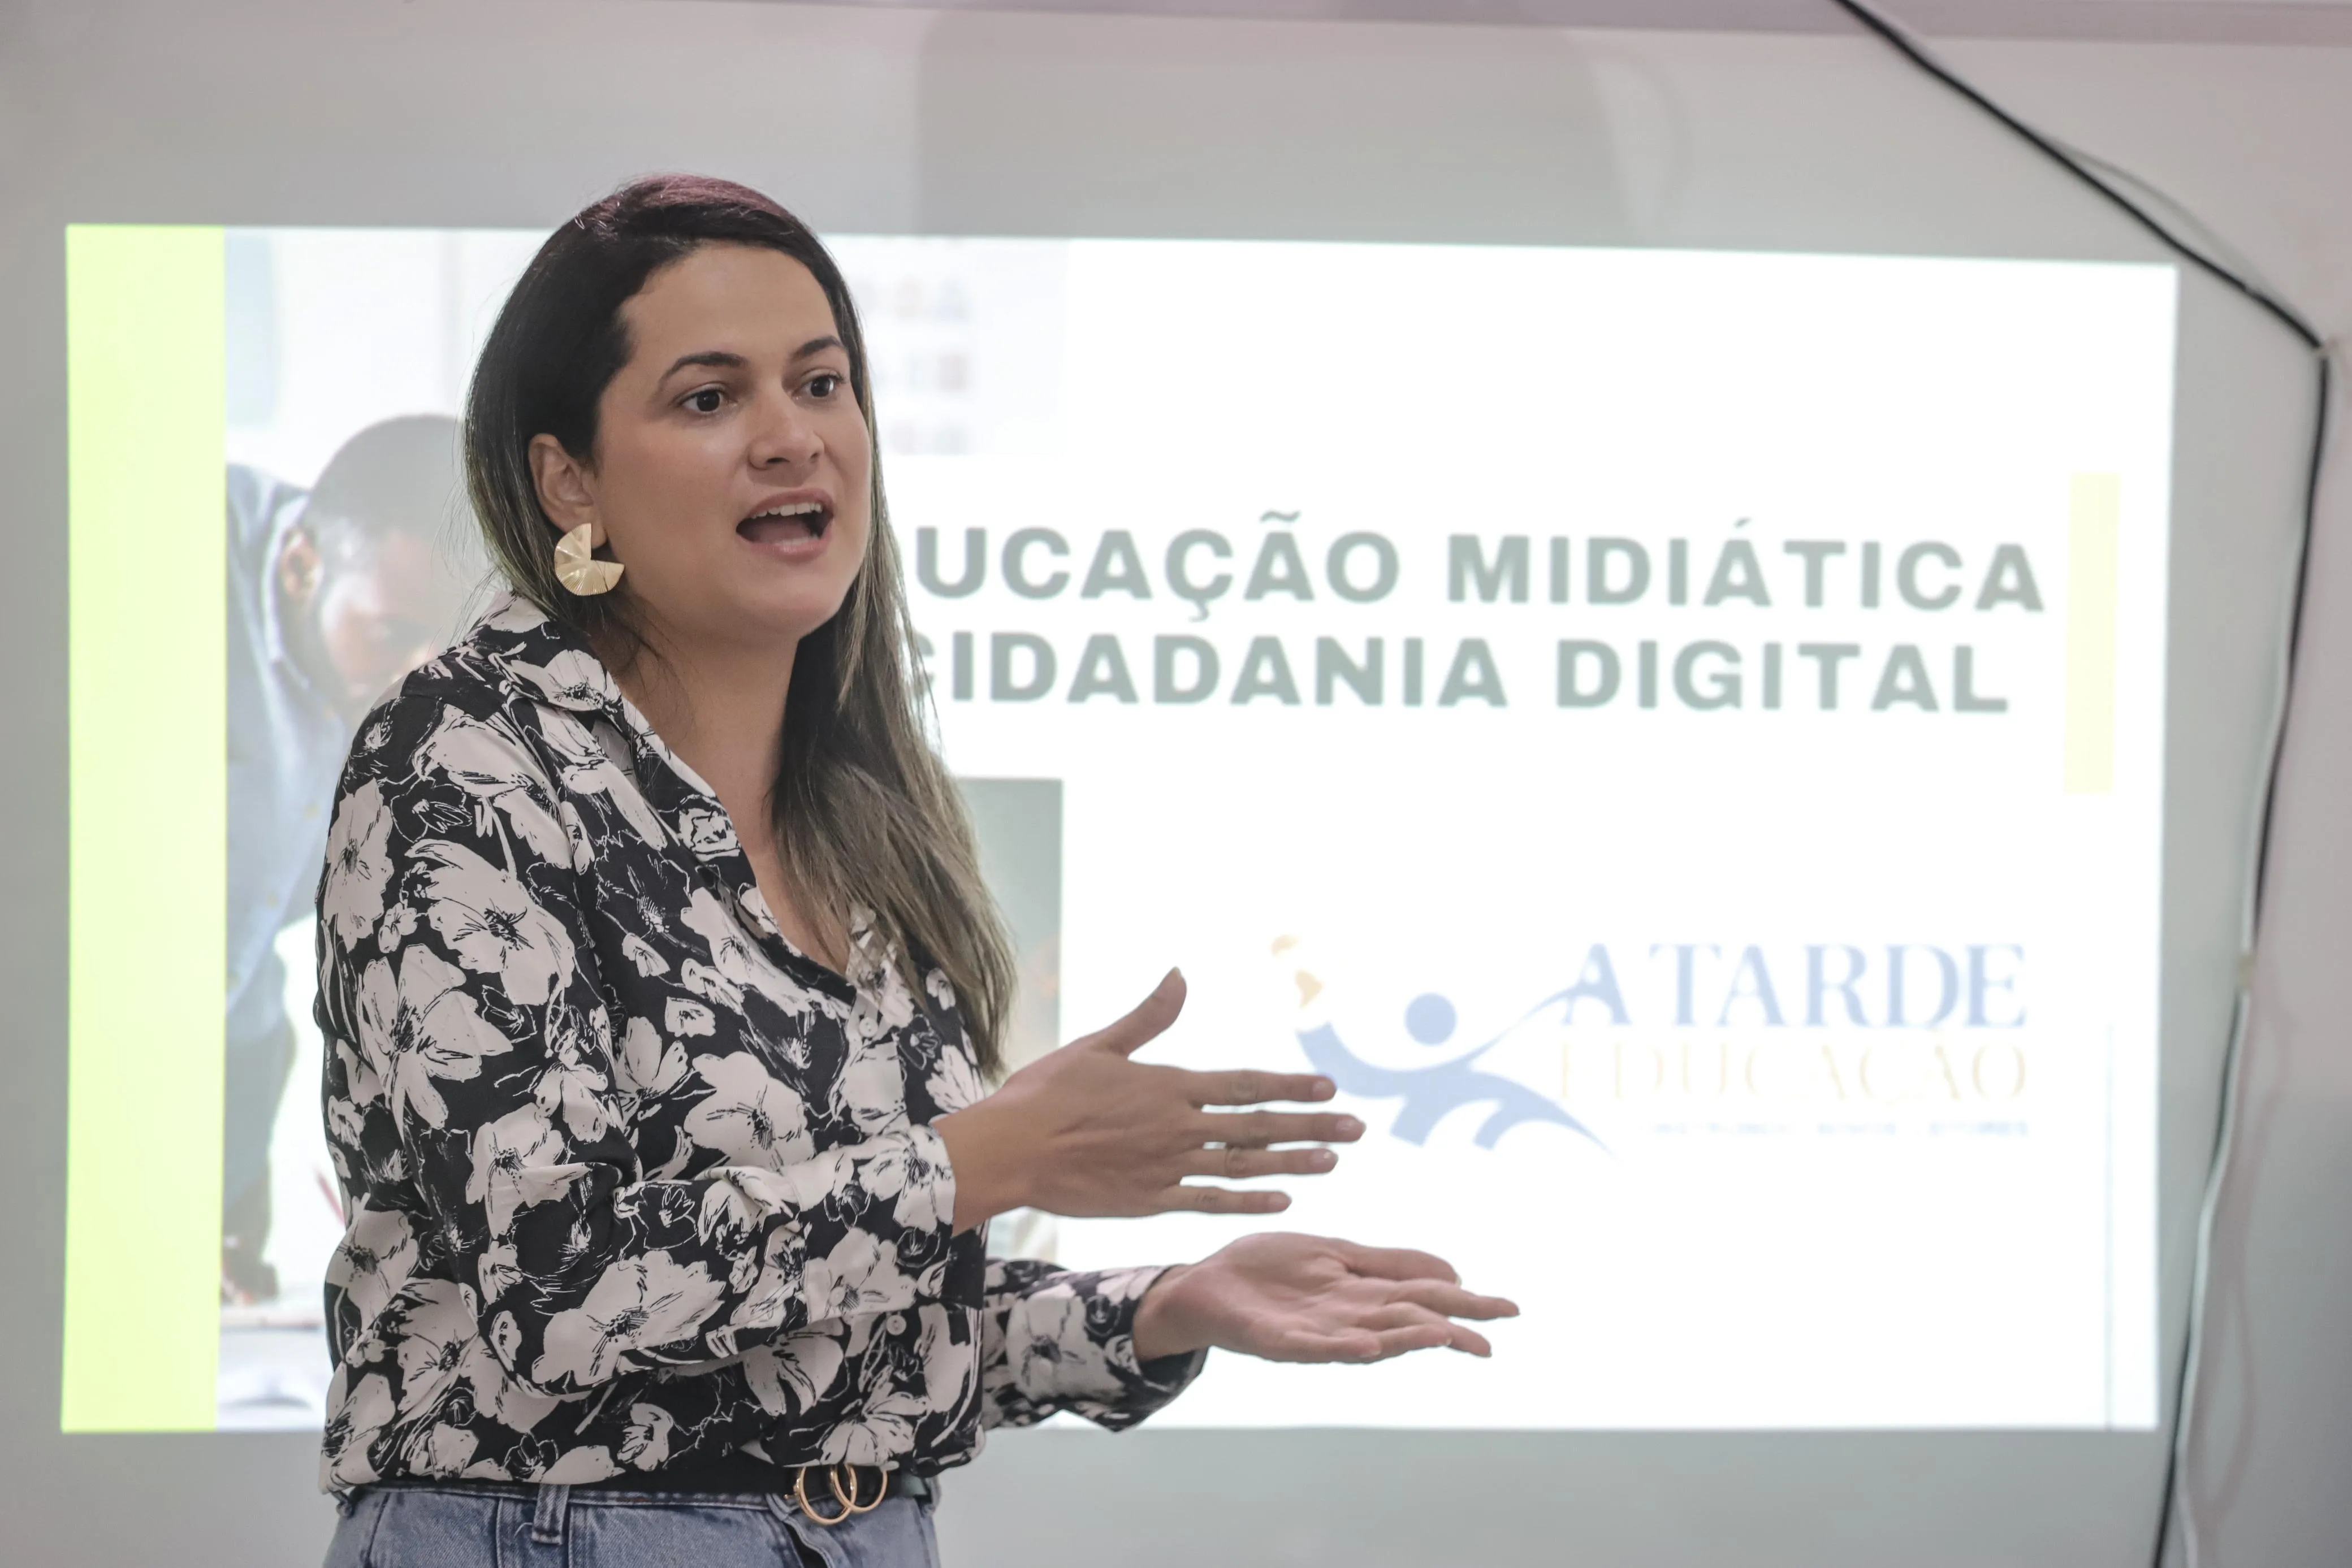 Berta Cunha, pedagoga do A TARDE Educação